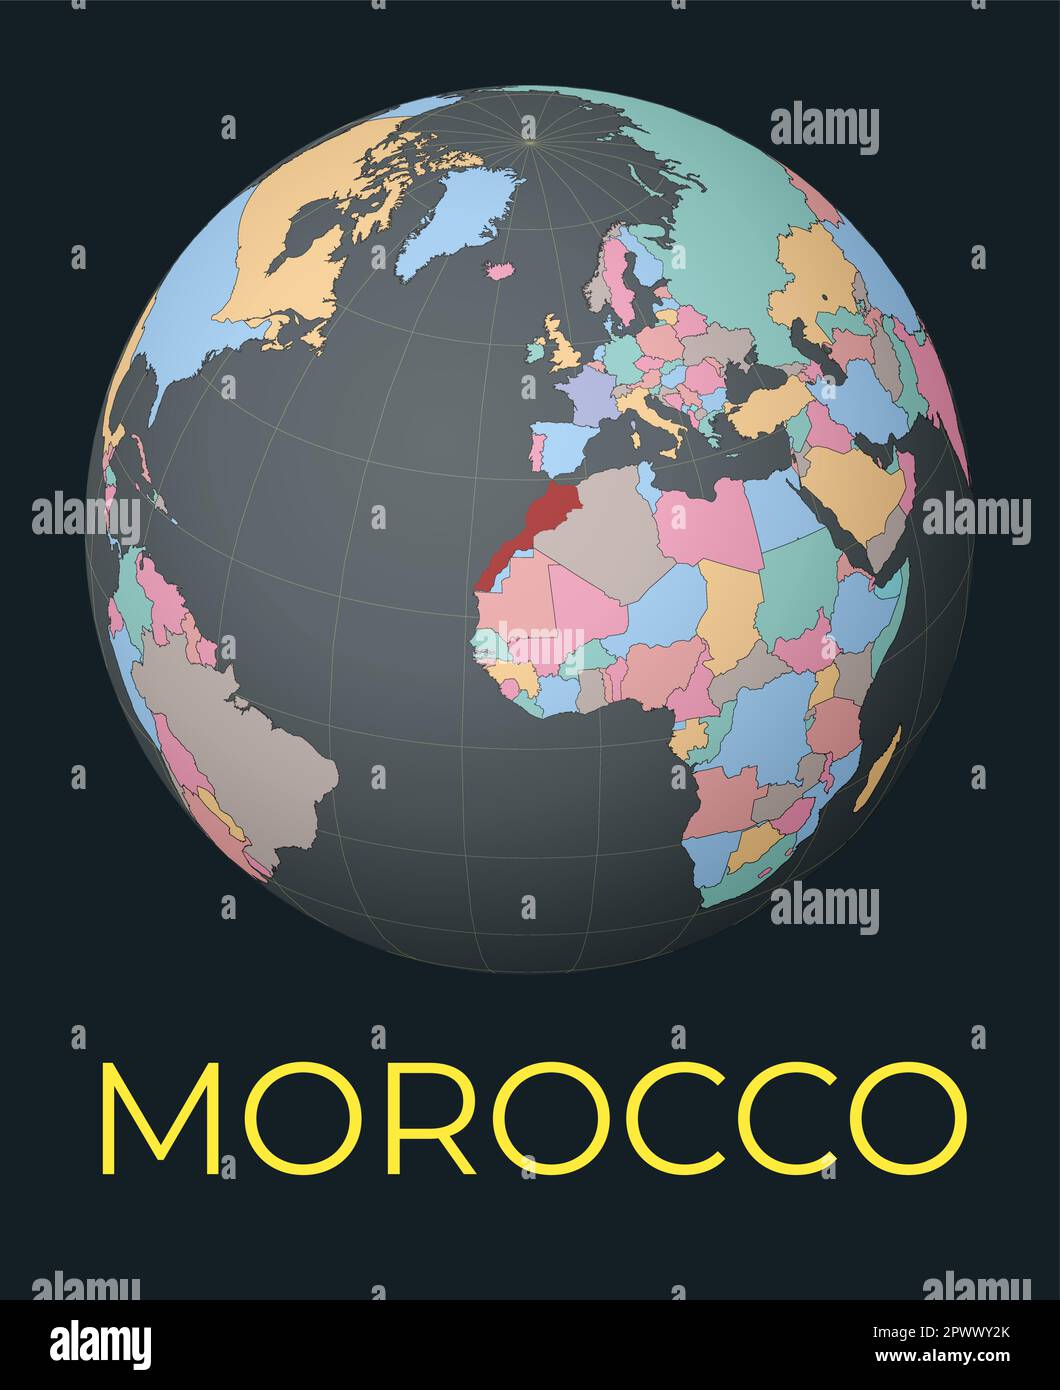 Carte du monde centrée sur le Maroc. Pays rouge mis en surbrillance. Vue satellite du monde centrée sur le pays avec le nom. Illustration vectorielle. Illustration de Vecteur